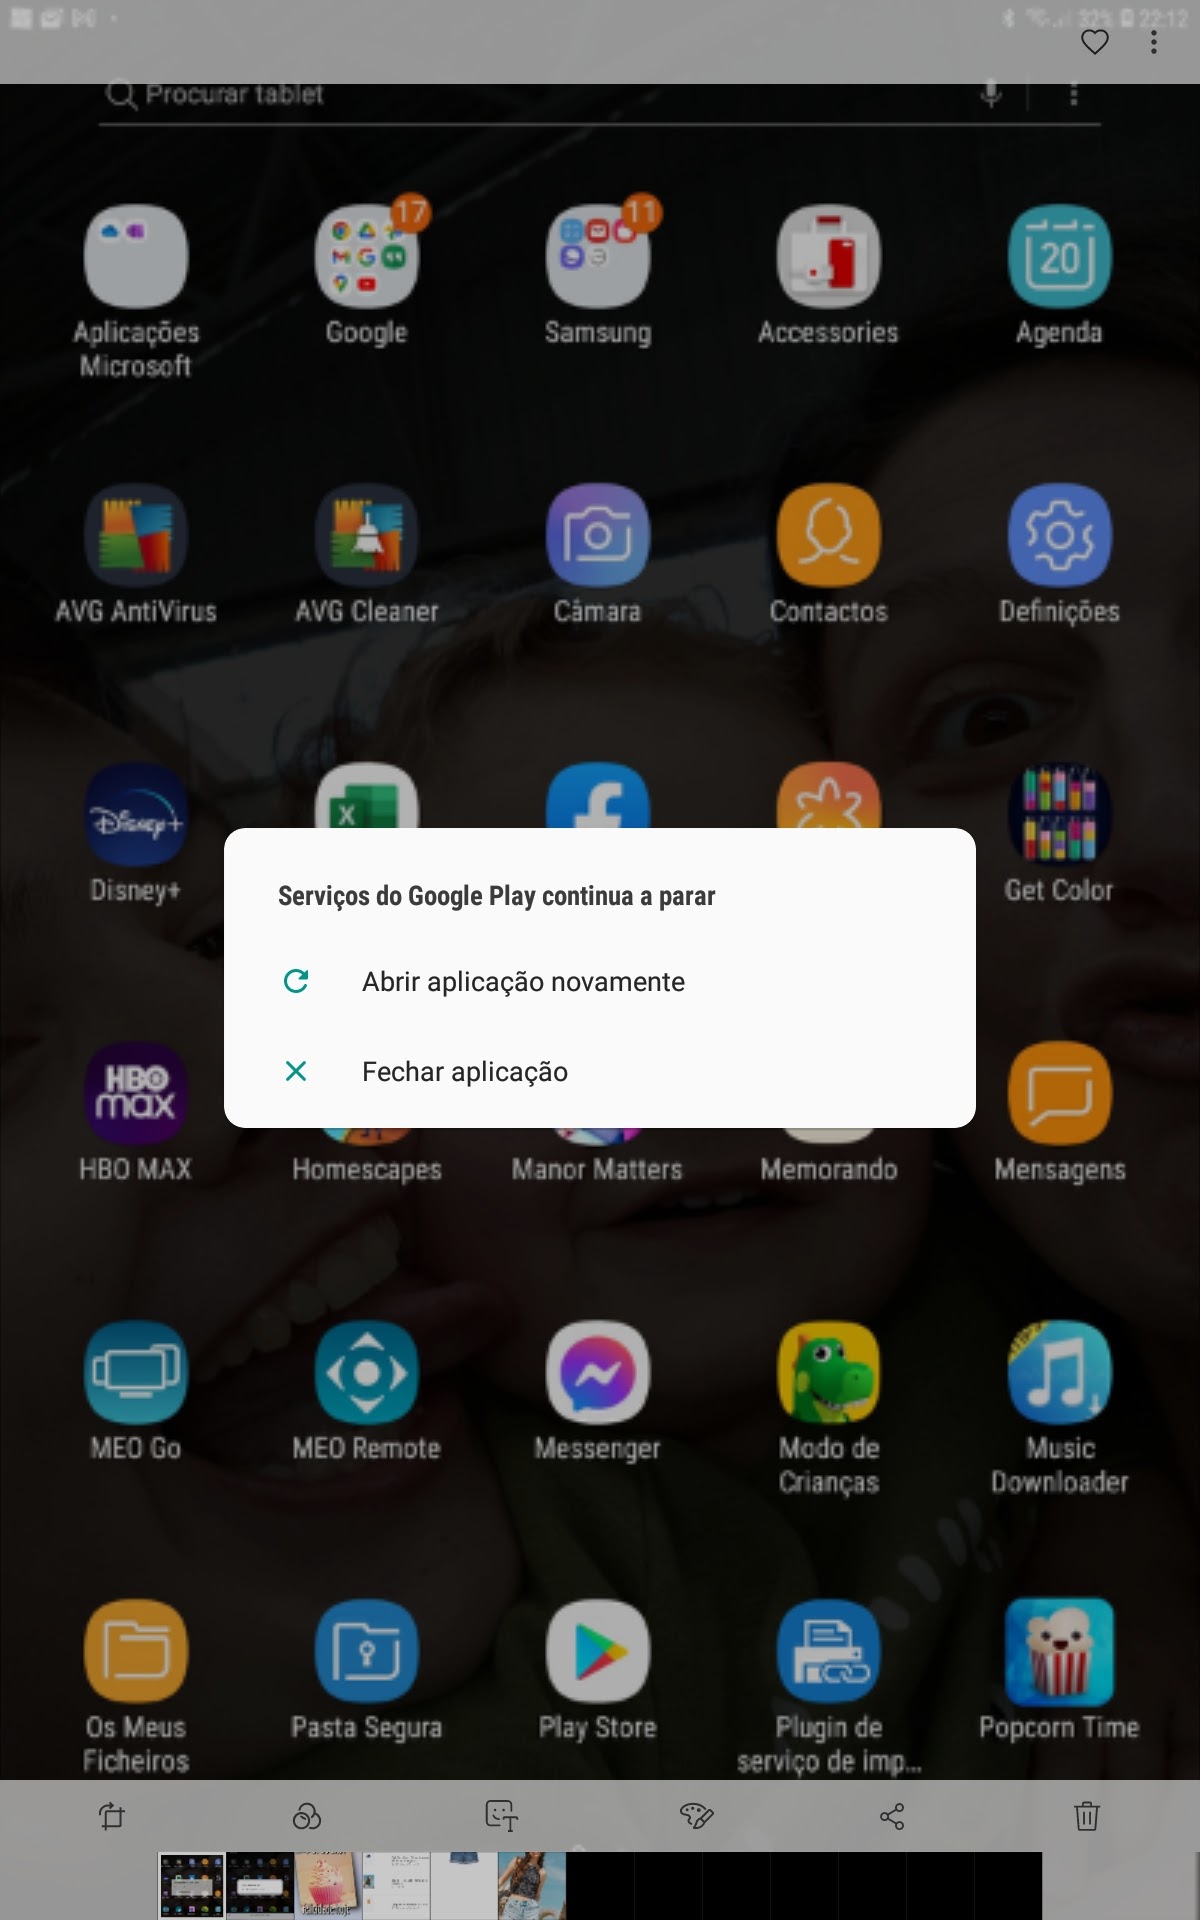 erro ao conectar a conta - Comunidade Google Play